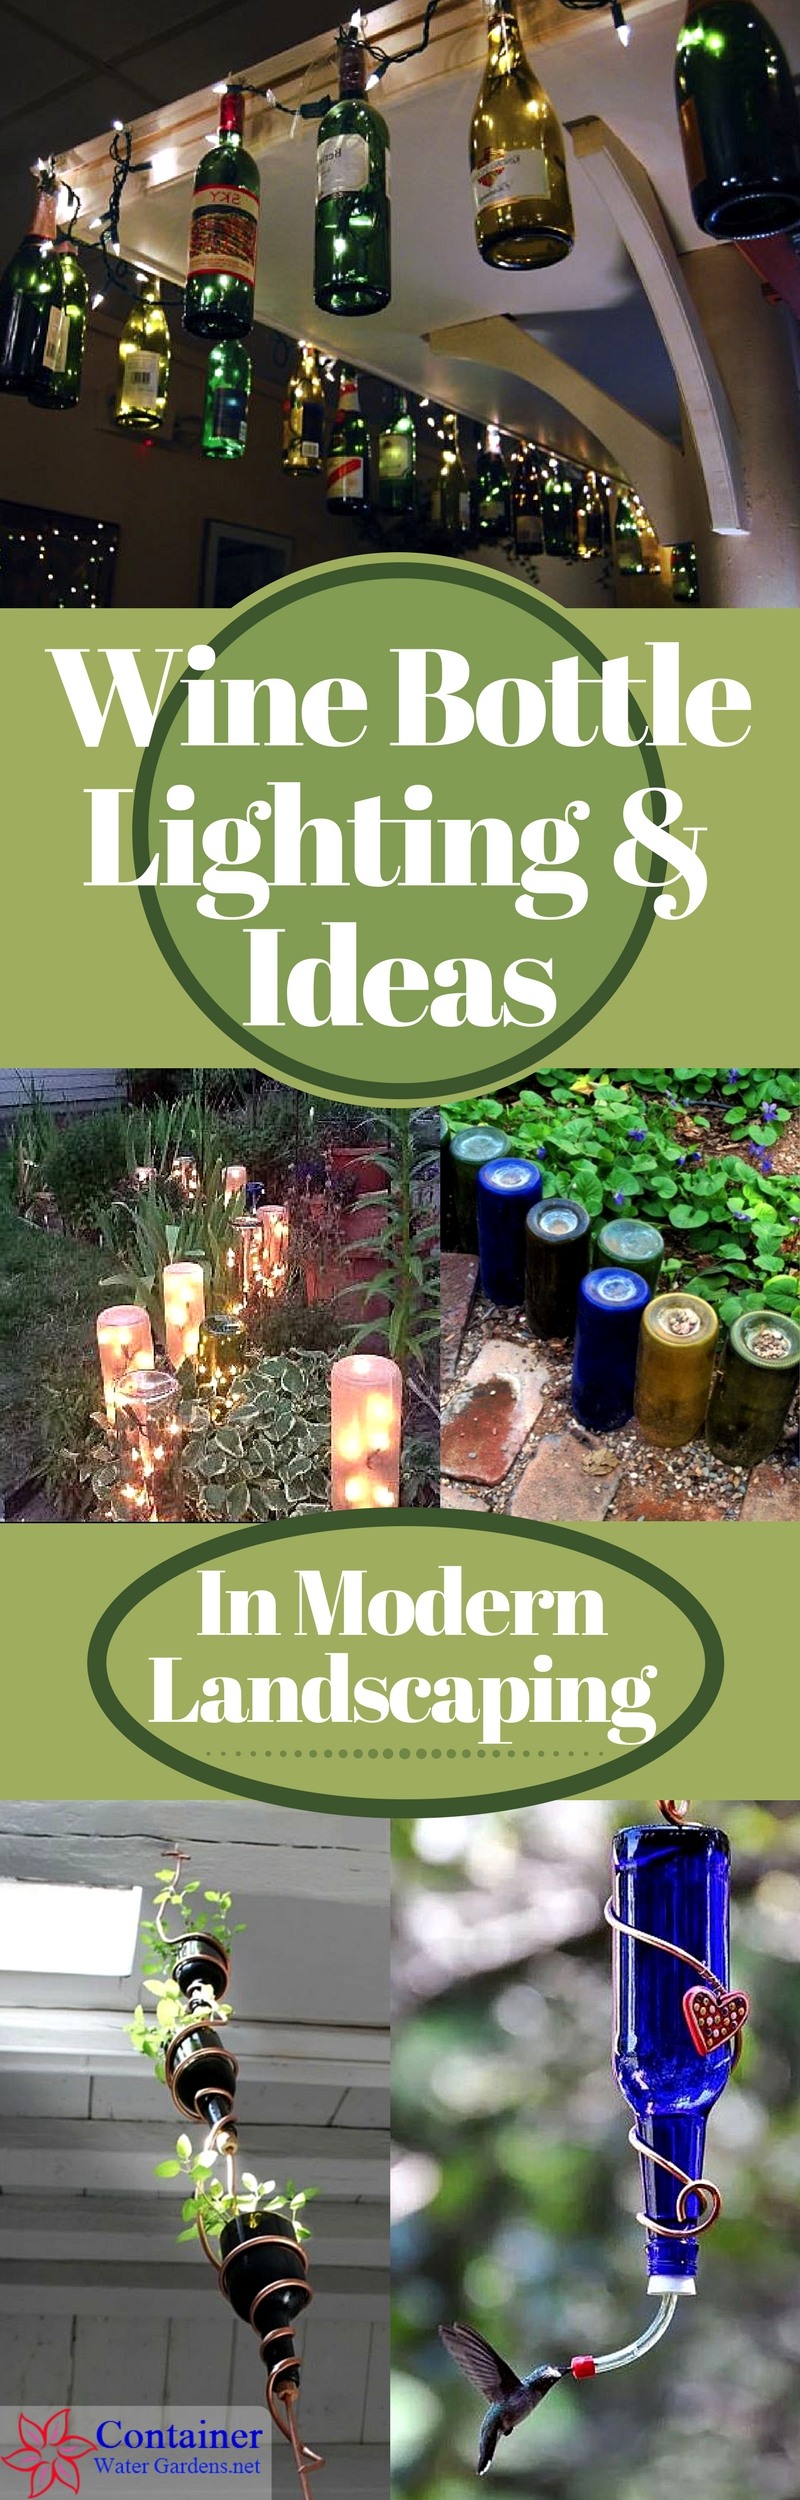 Wine Bottle Lighting & Ideas In Landscaping